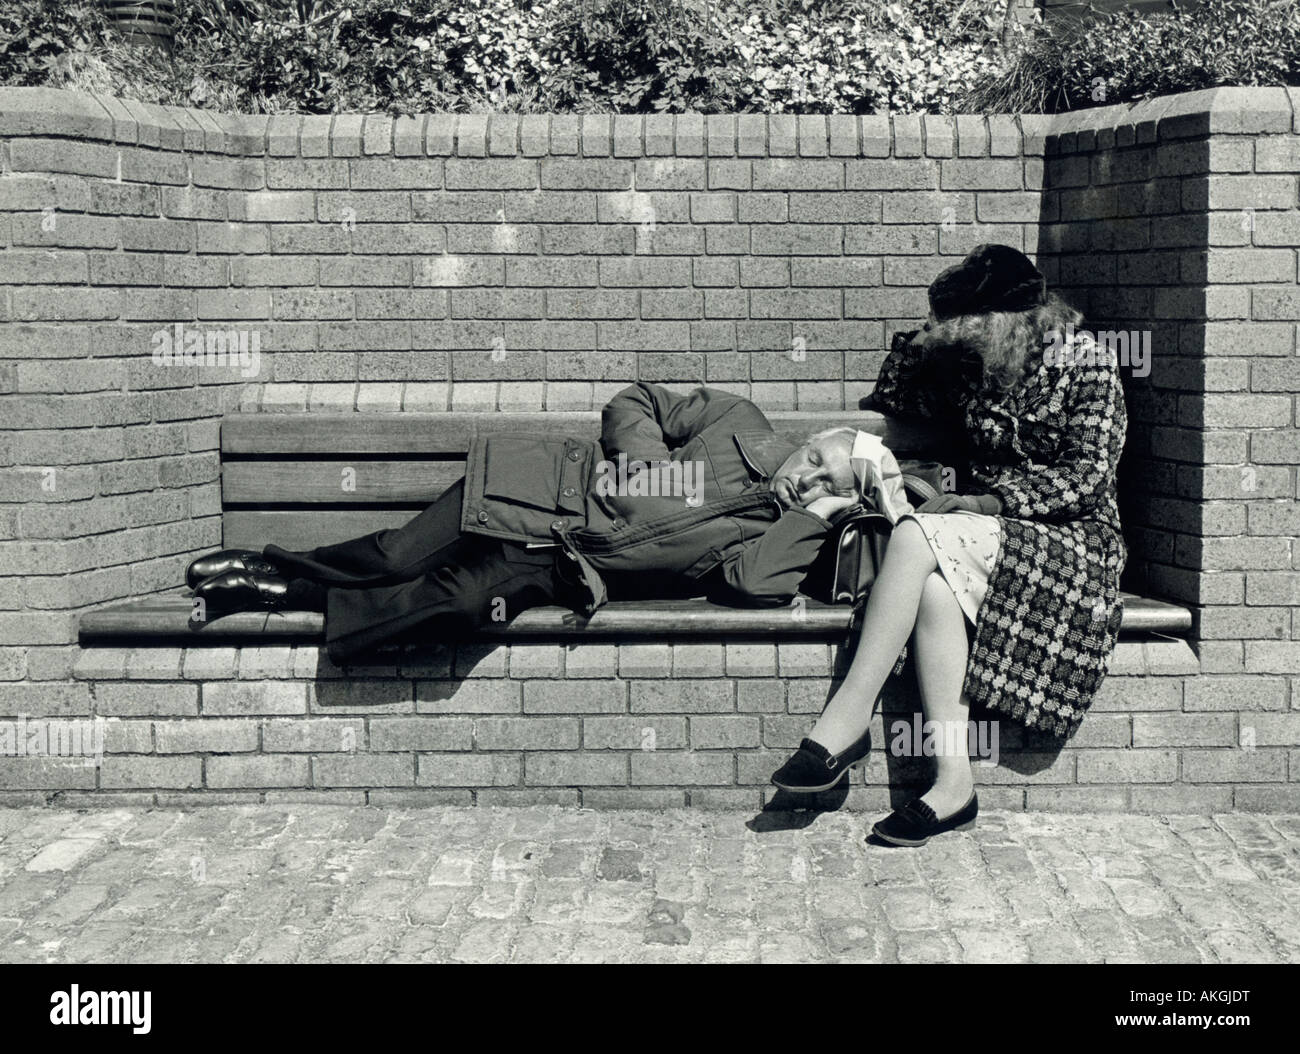 Candid couple sleeping on bench, Bristol, UK. Black & white photo, 1980s. Stock Photo